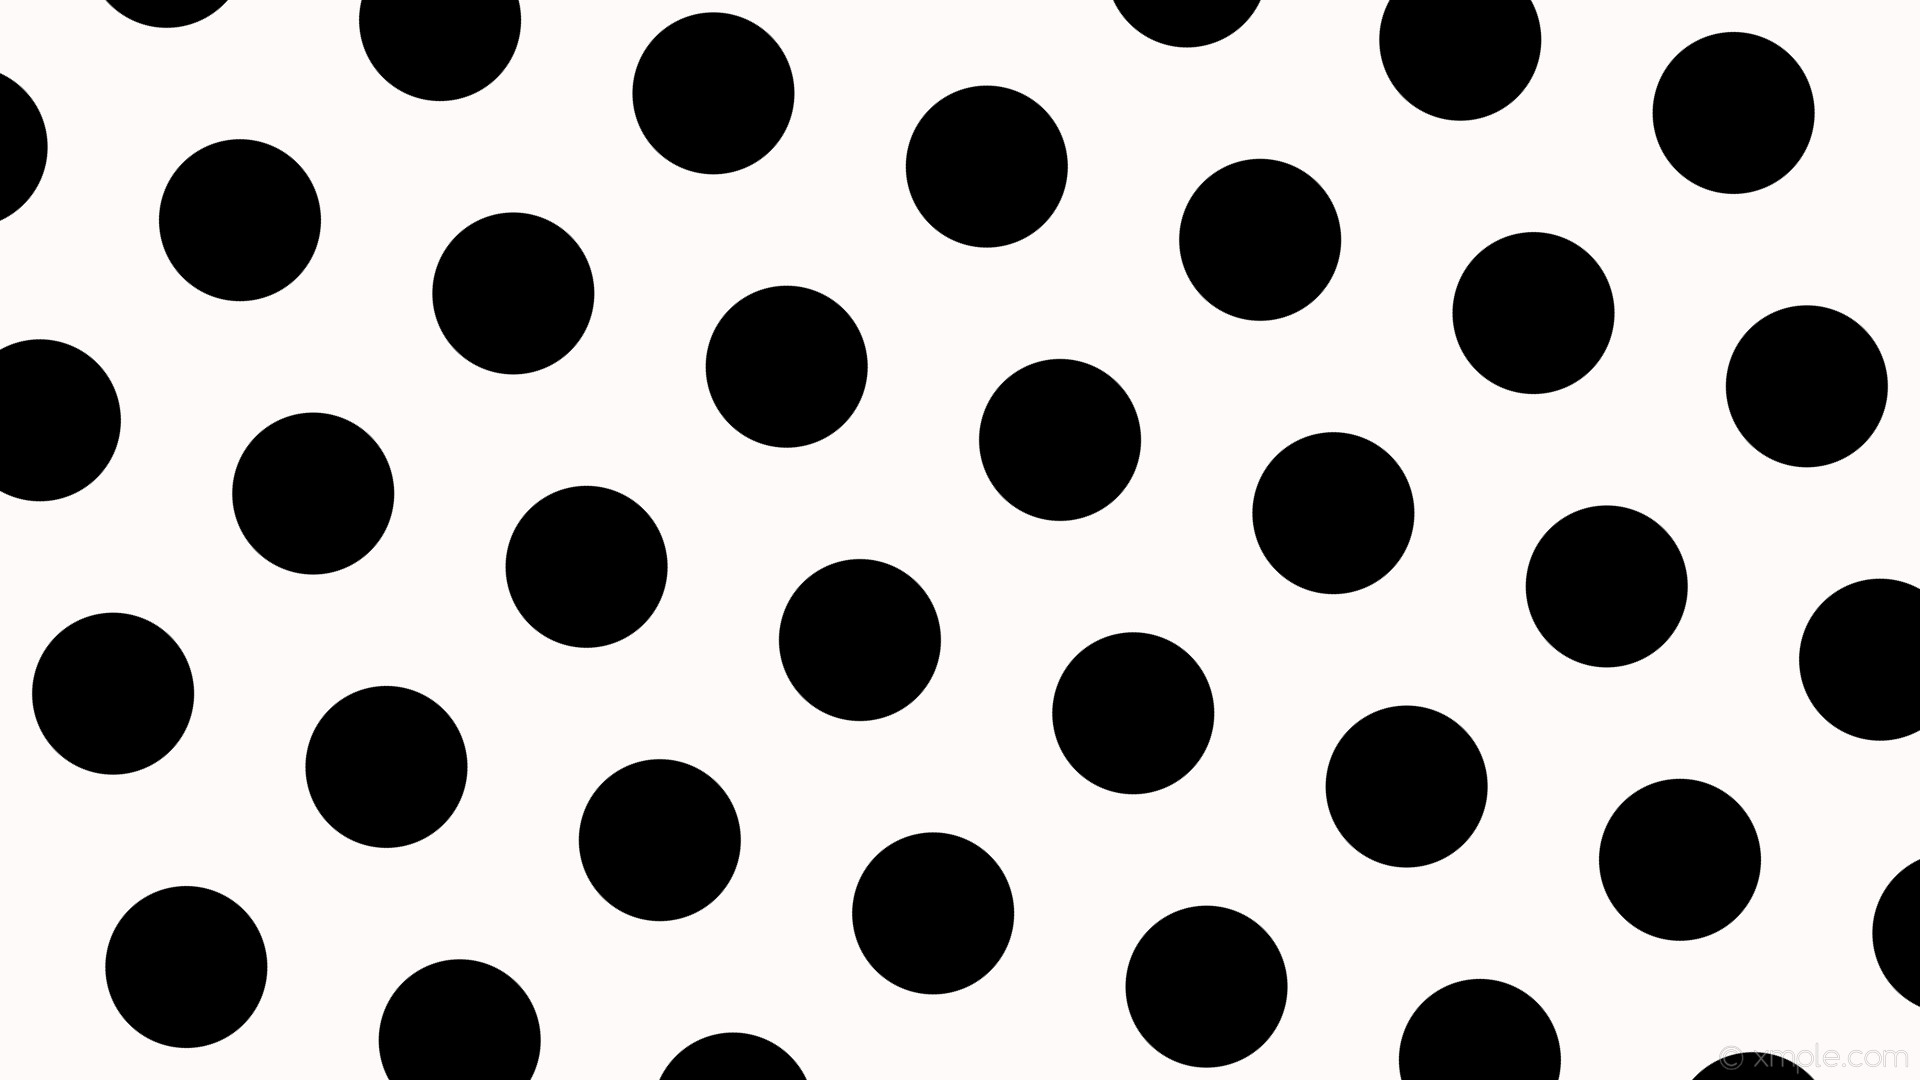 1920x1080 wallpaper hexagon polka dots black white snow #fffafa #000000 diagonal 45Â°  162px 283px